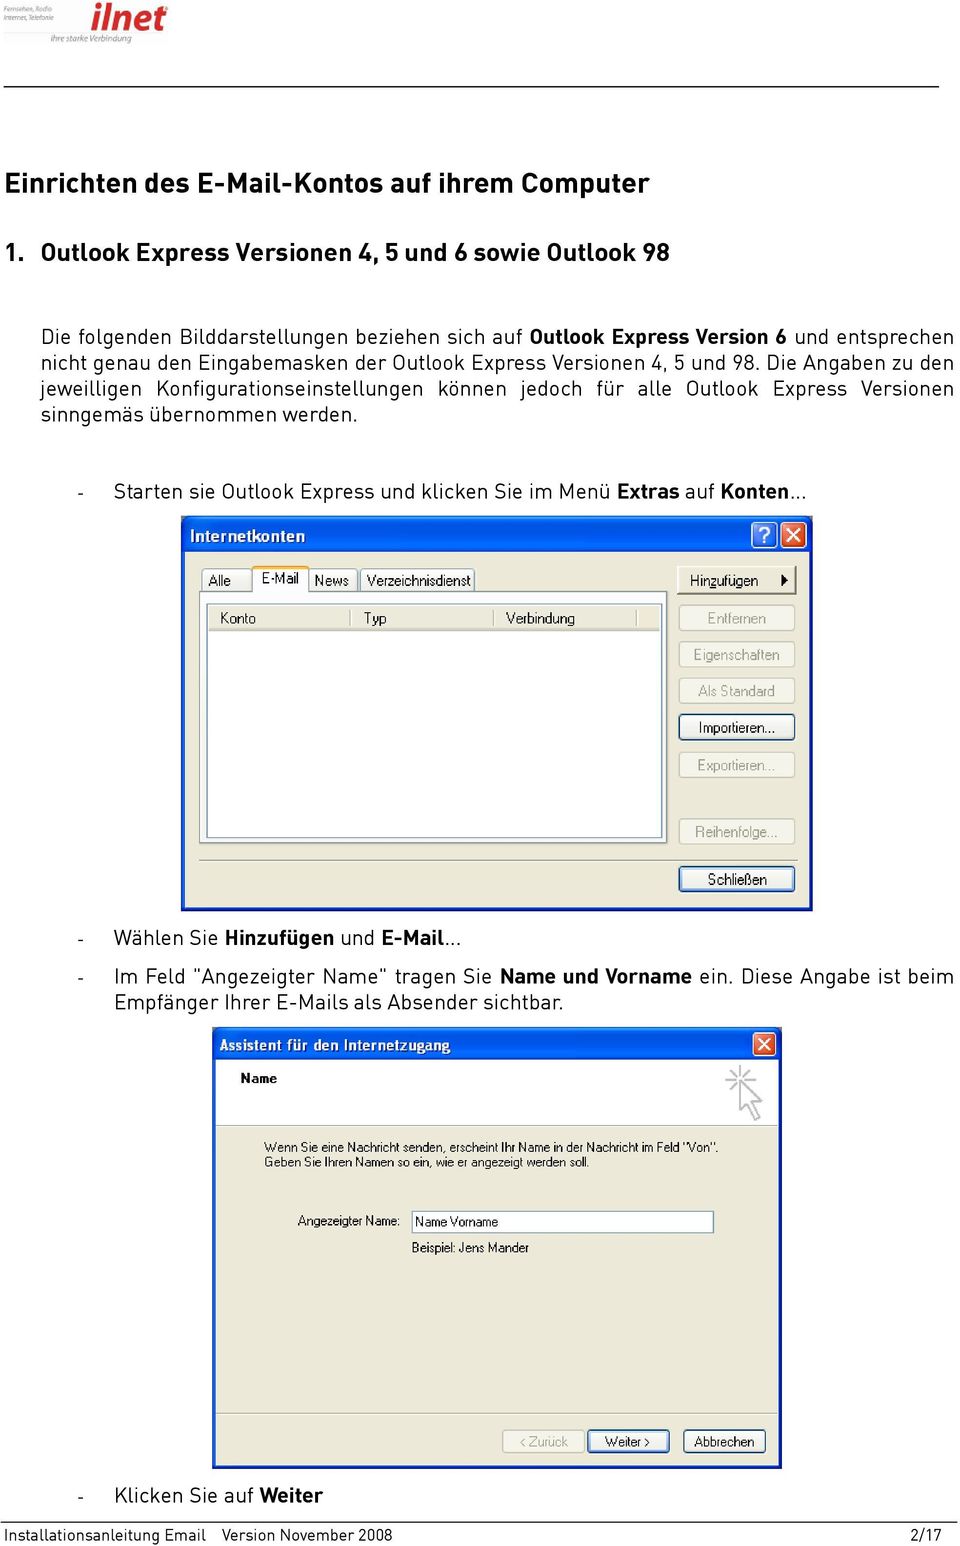 Outlook Express Versionen 4, 5 und 98. Die Angaben zu den jeweilligen Konfigurationseinstellungen können jedoch für alle Outlook Express Versionen sinngemäs übernommen werden.